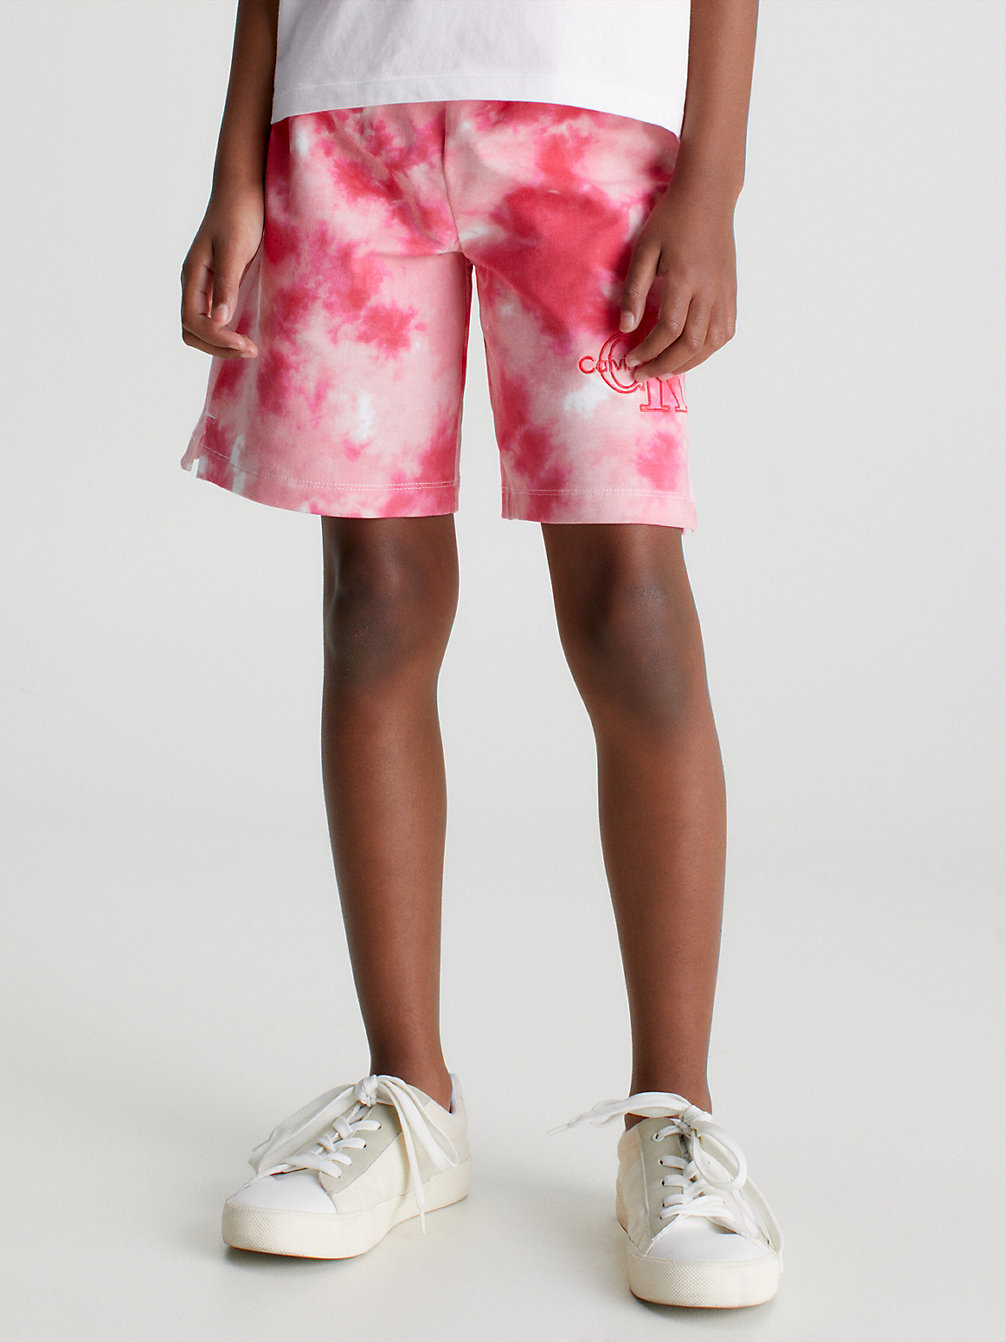 NATURE PINK AOP Tie Dye Shorts undefined girls Calvin Klein